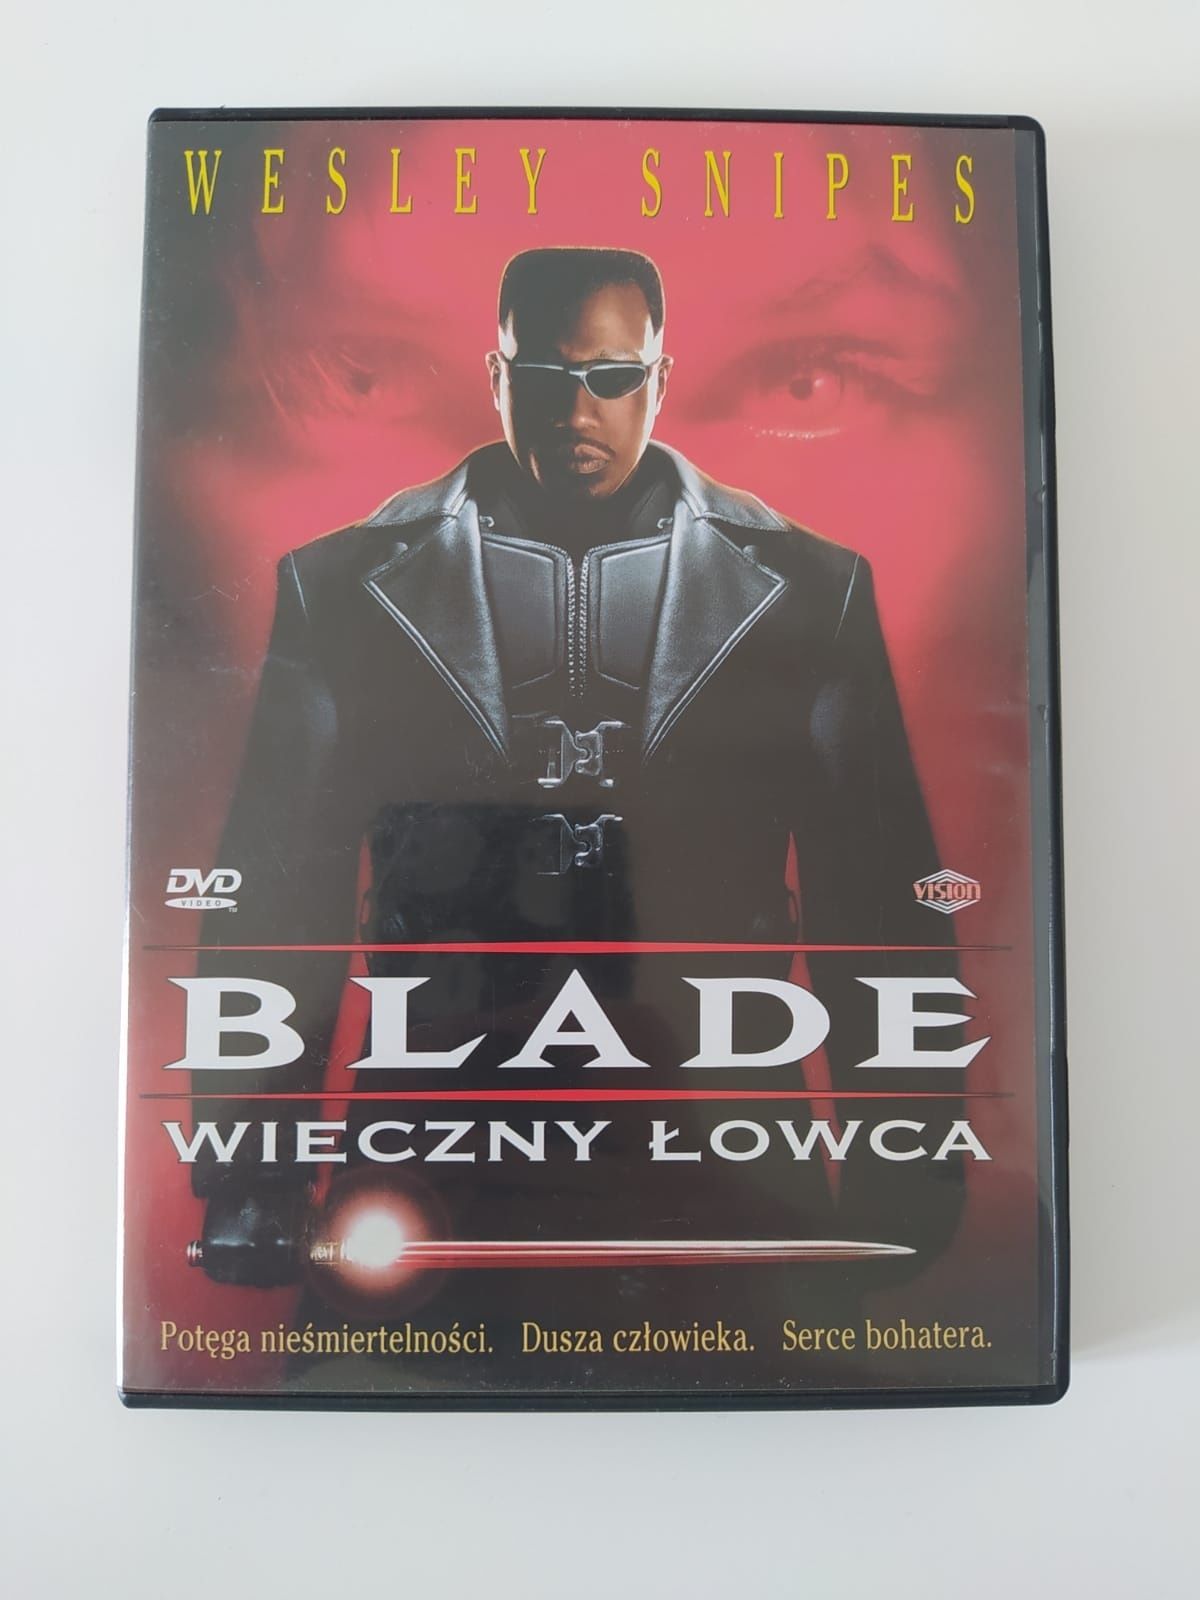 Film DVD "Blade Wieczny Łowca" Wesley Snipes